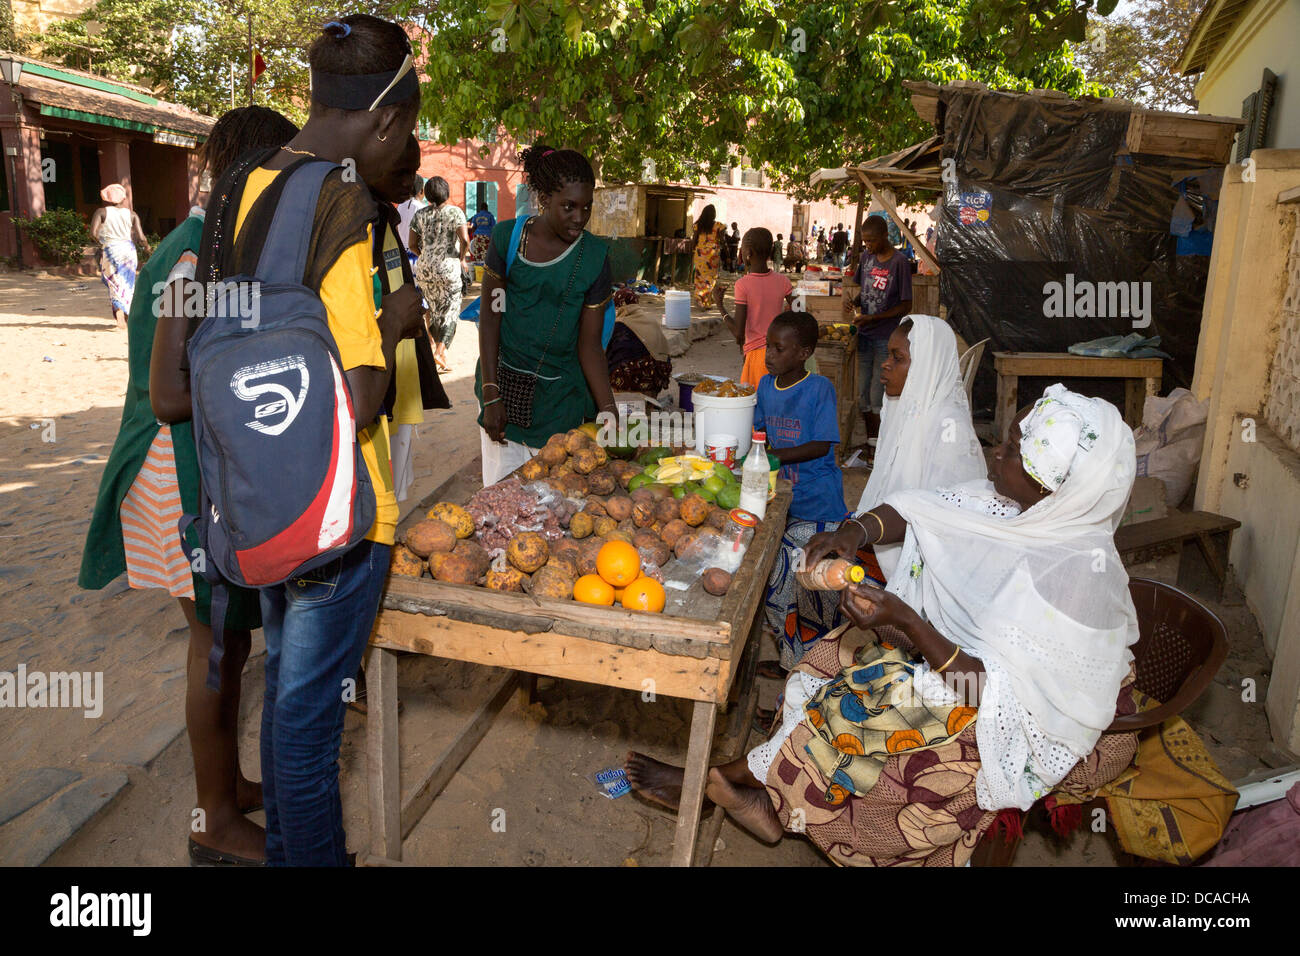 L'achat de mangues sénégalais ou Madda (Maad en wolof) Fruits à un stand de fruits, l'île de Gorée, au Sénégal. Banque D'Images